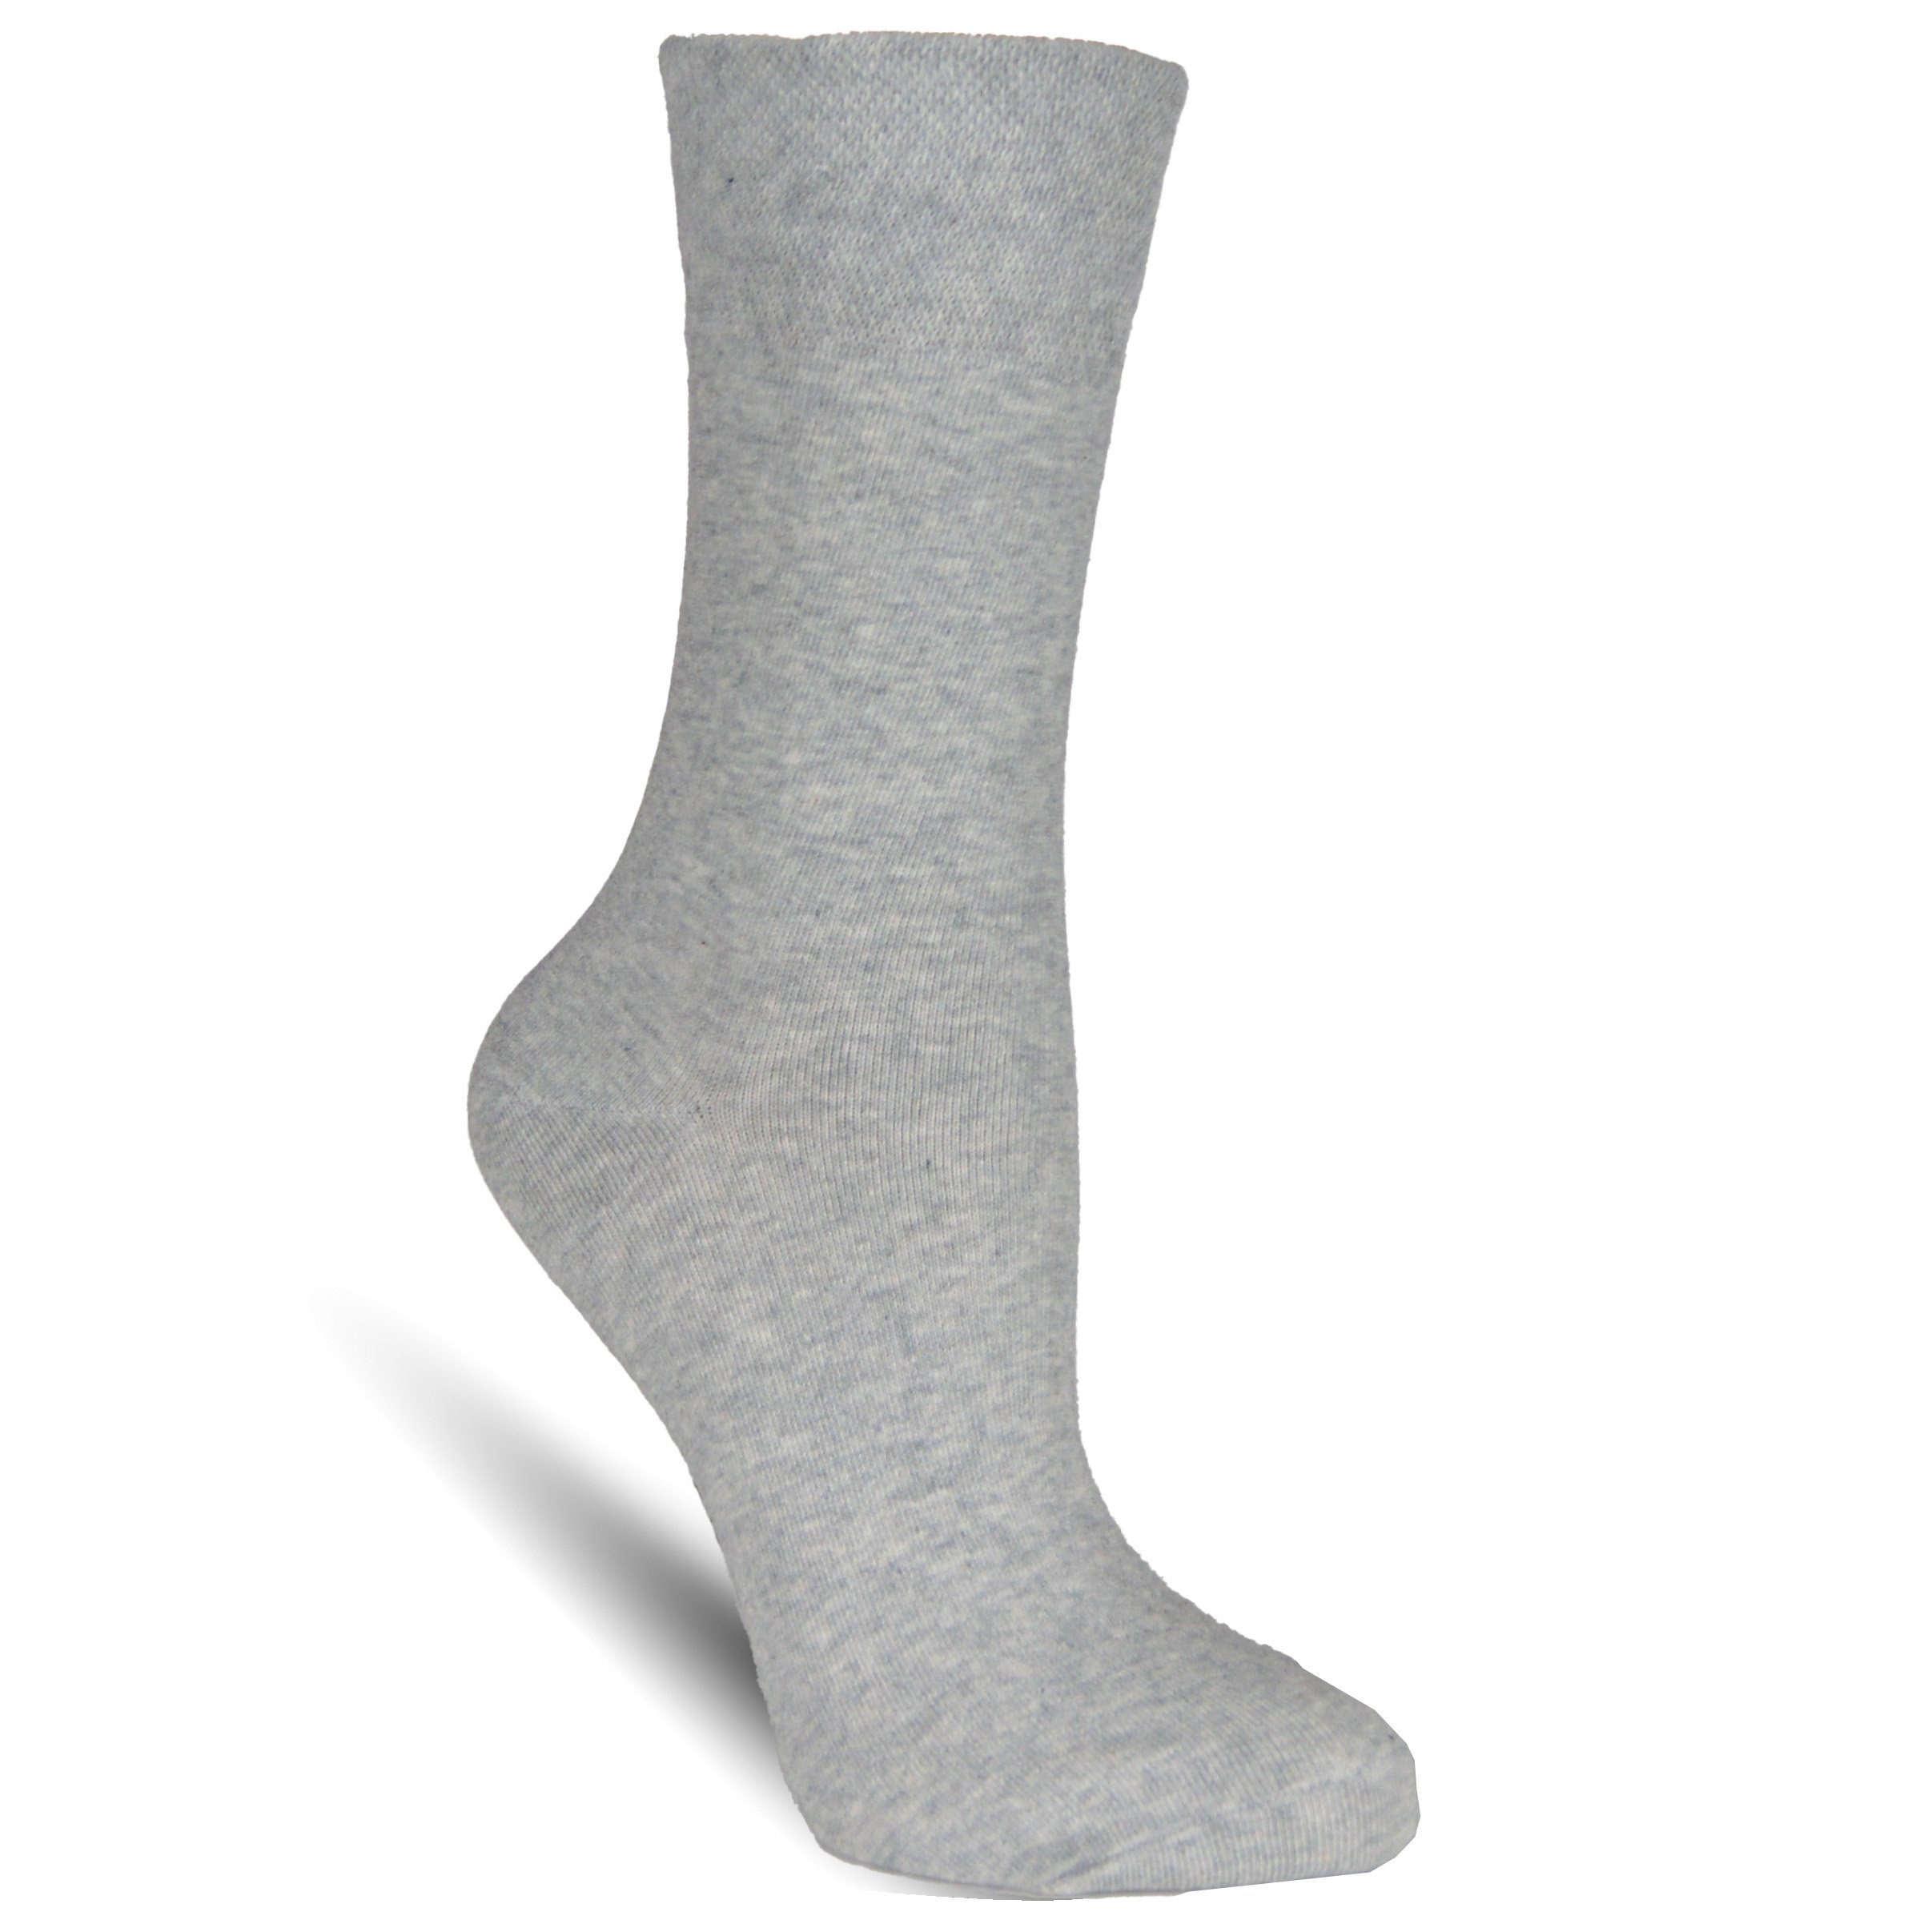 ohne Schwarz (12-Paar) Diabetikersocken Socked elastische ohne Naht Damensocken Strümpfe Einschneiden, Komfortbund, kein Gummi